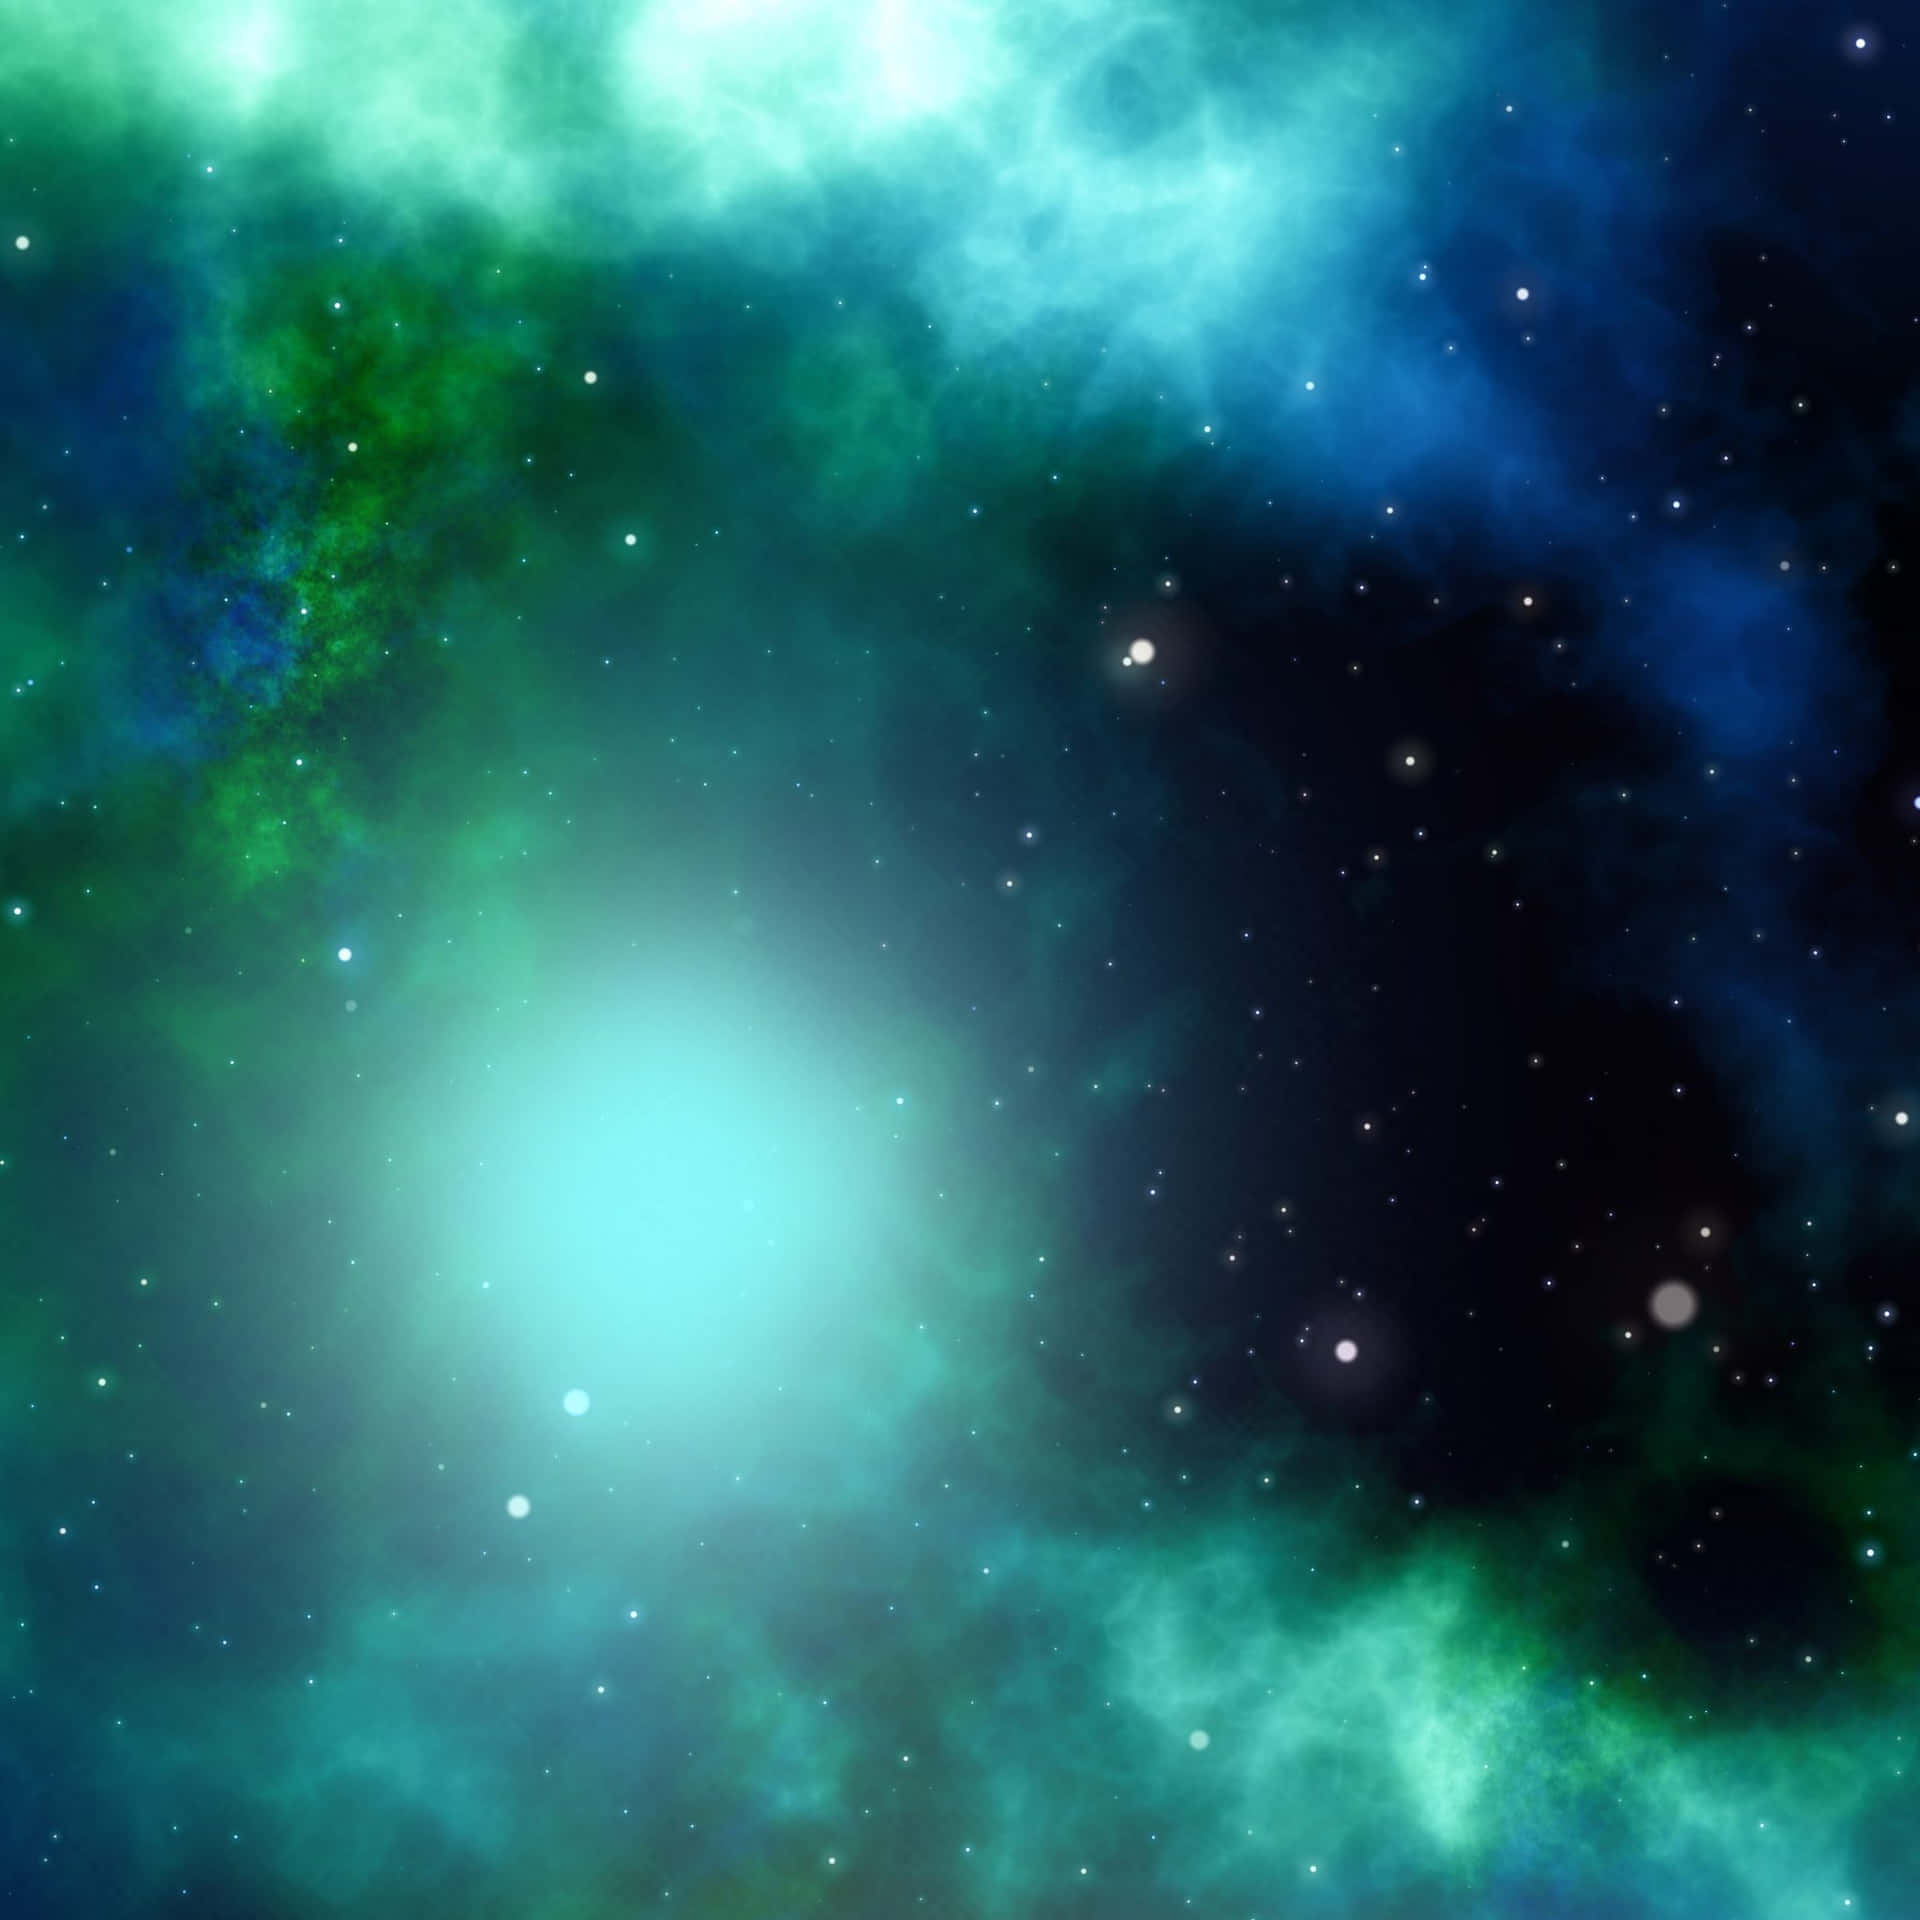 Laeternidad Revelada En La Belleza De Una Galaxia Lejana Verde Y Azul. Fondo de pantalla